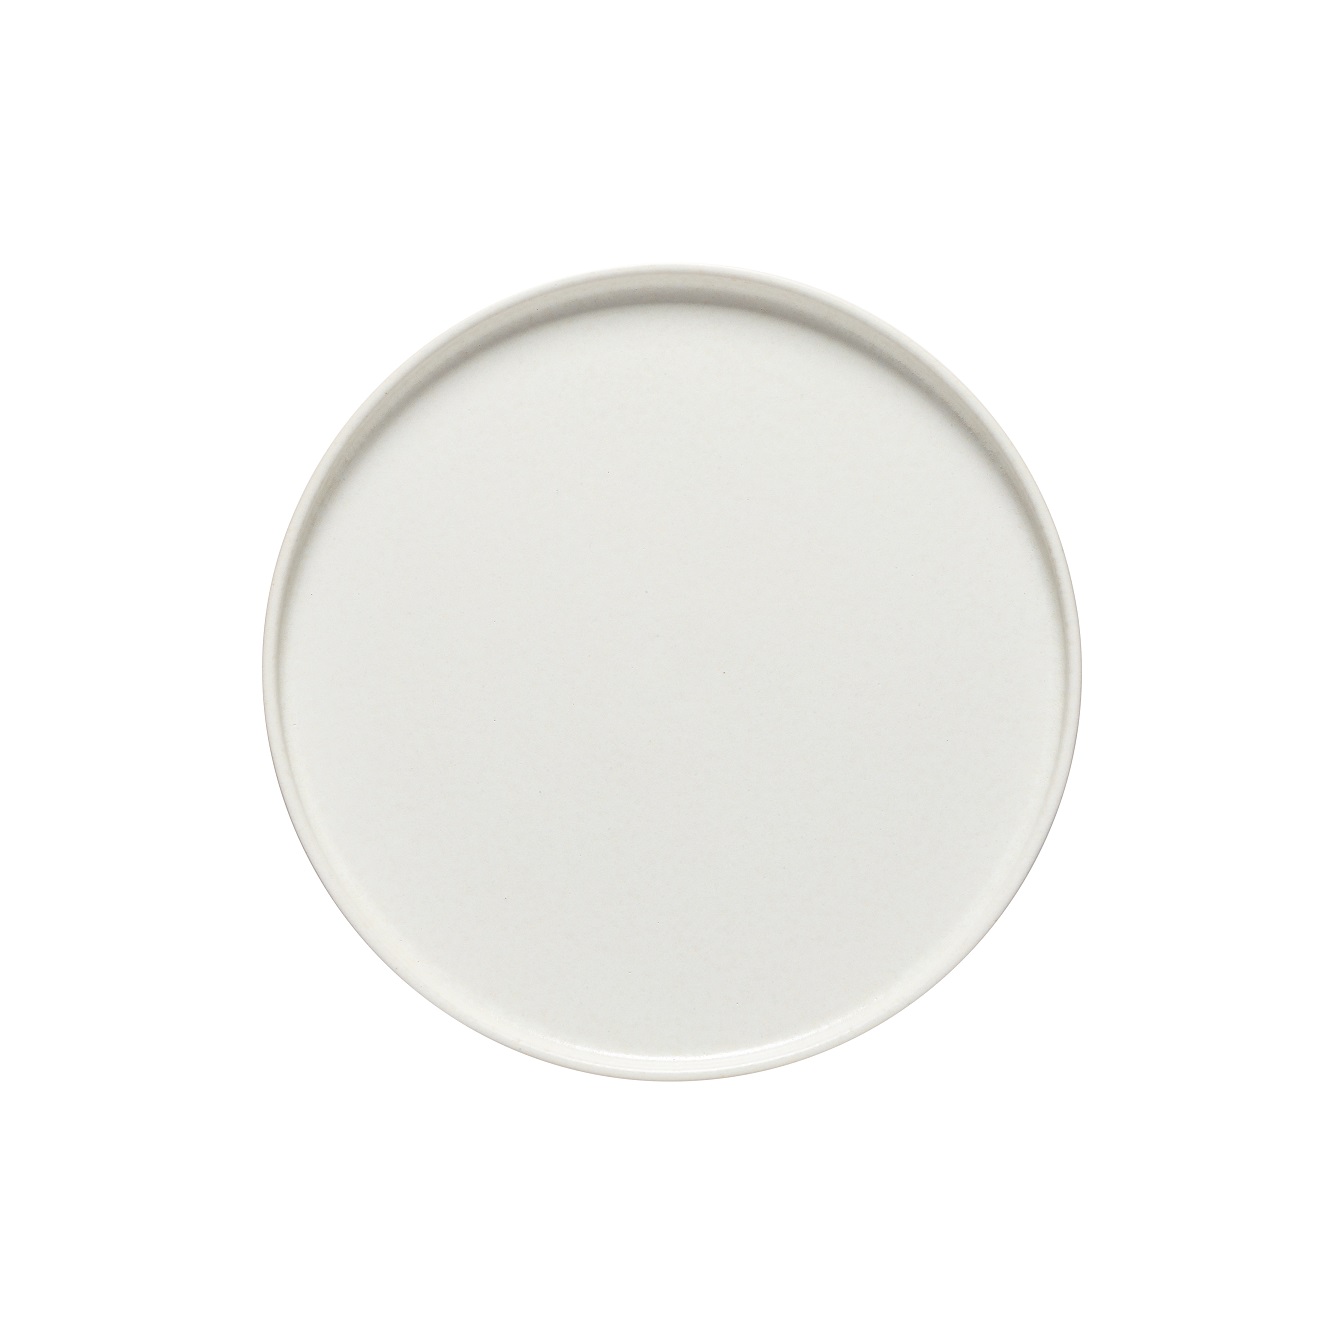 Redonda White Round Plate 27cm Gift